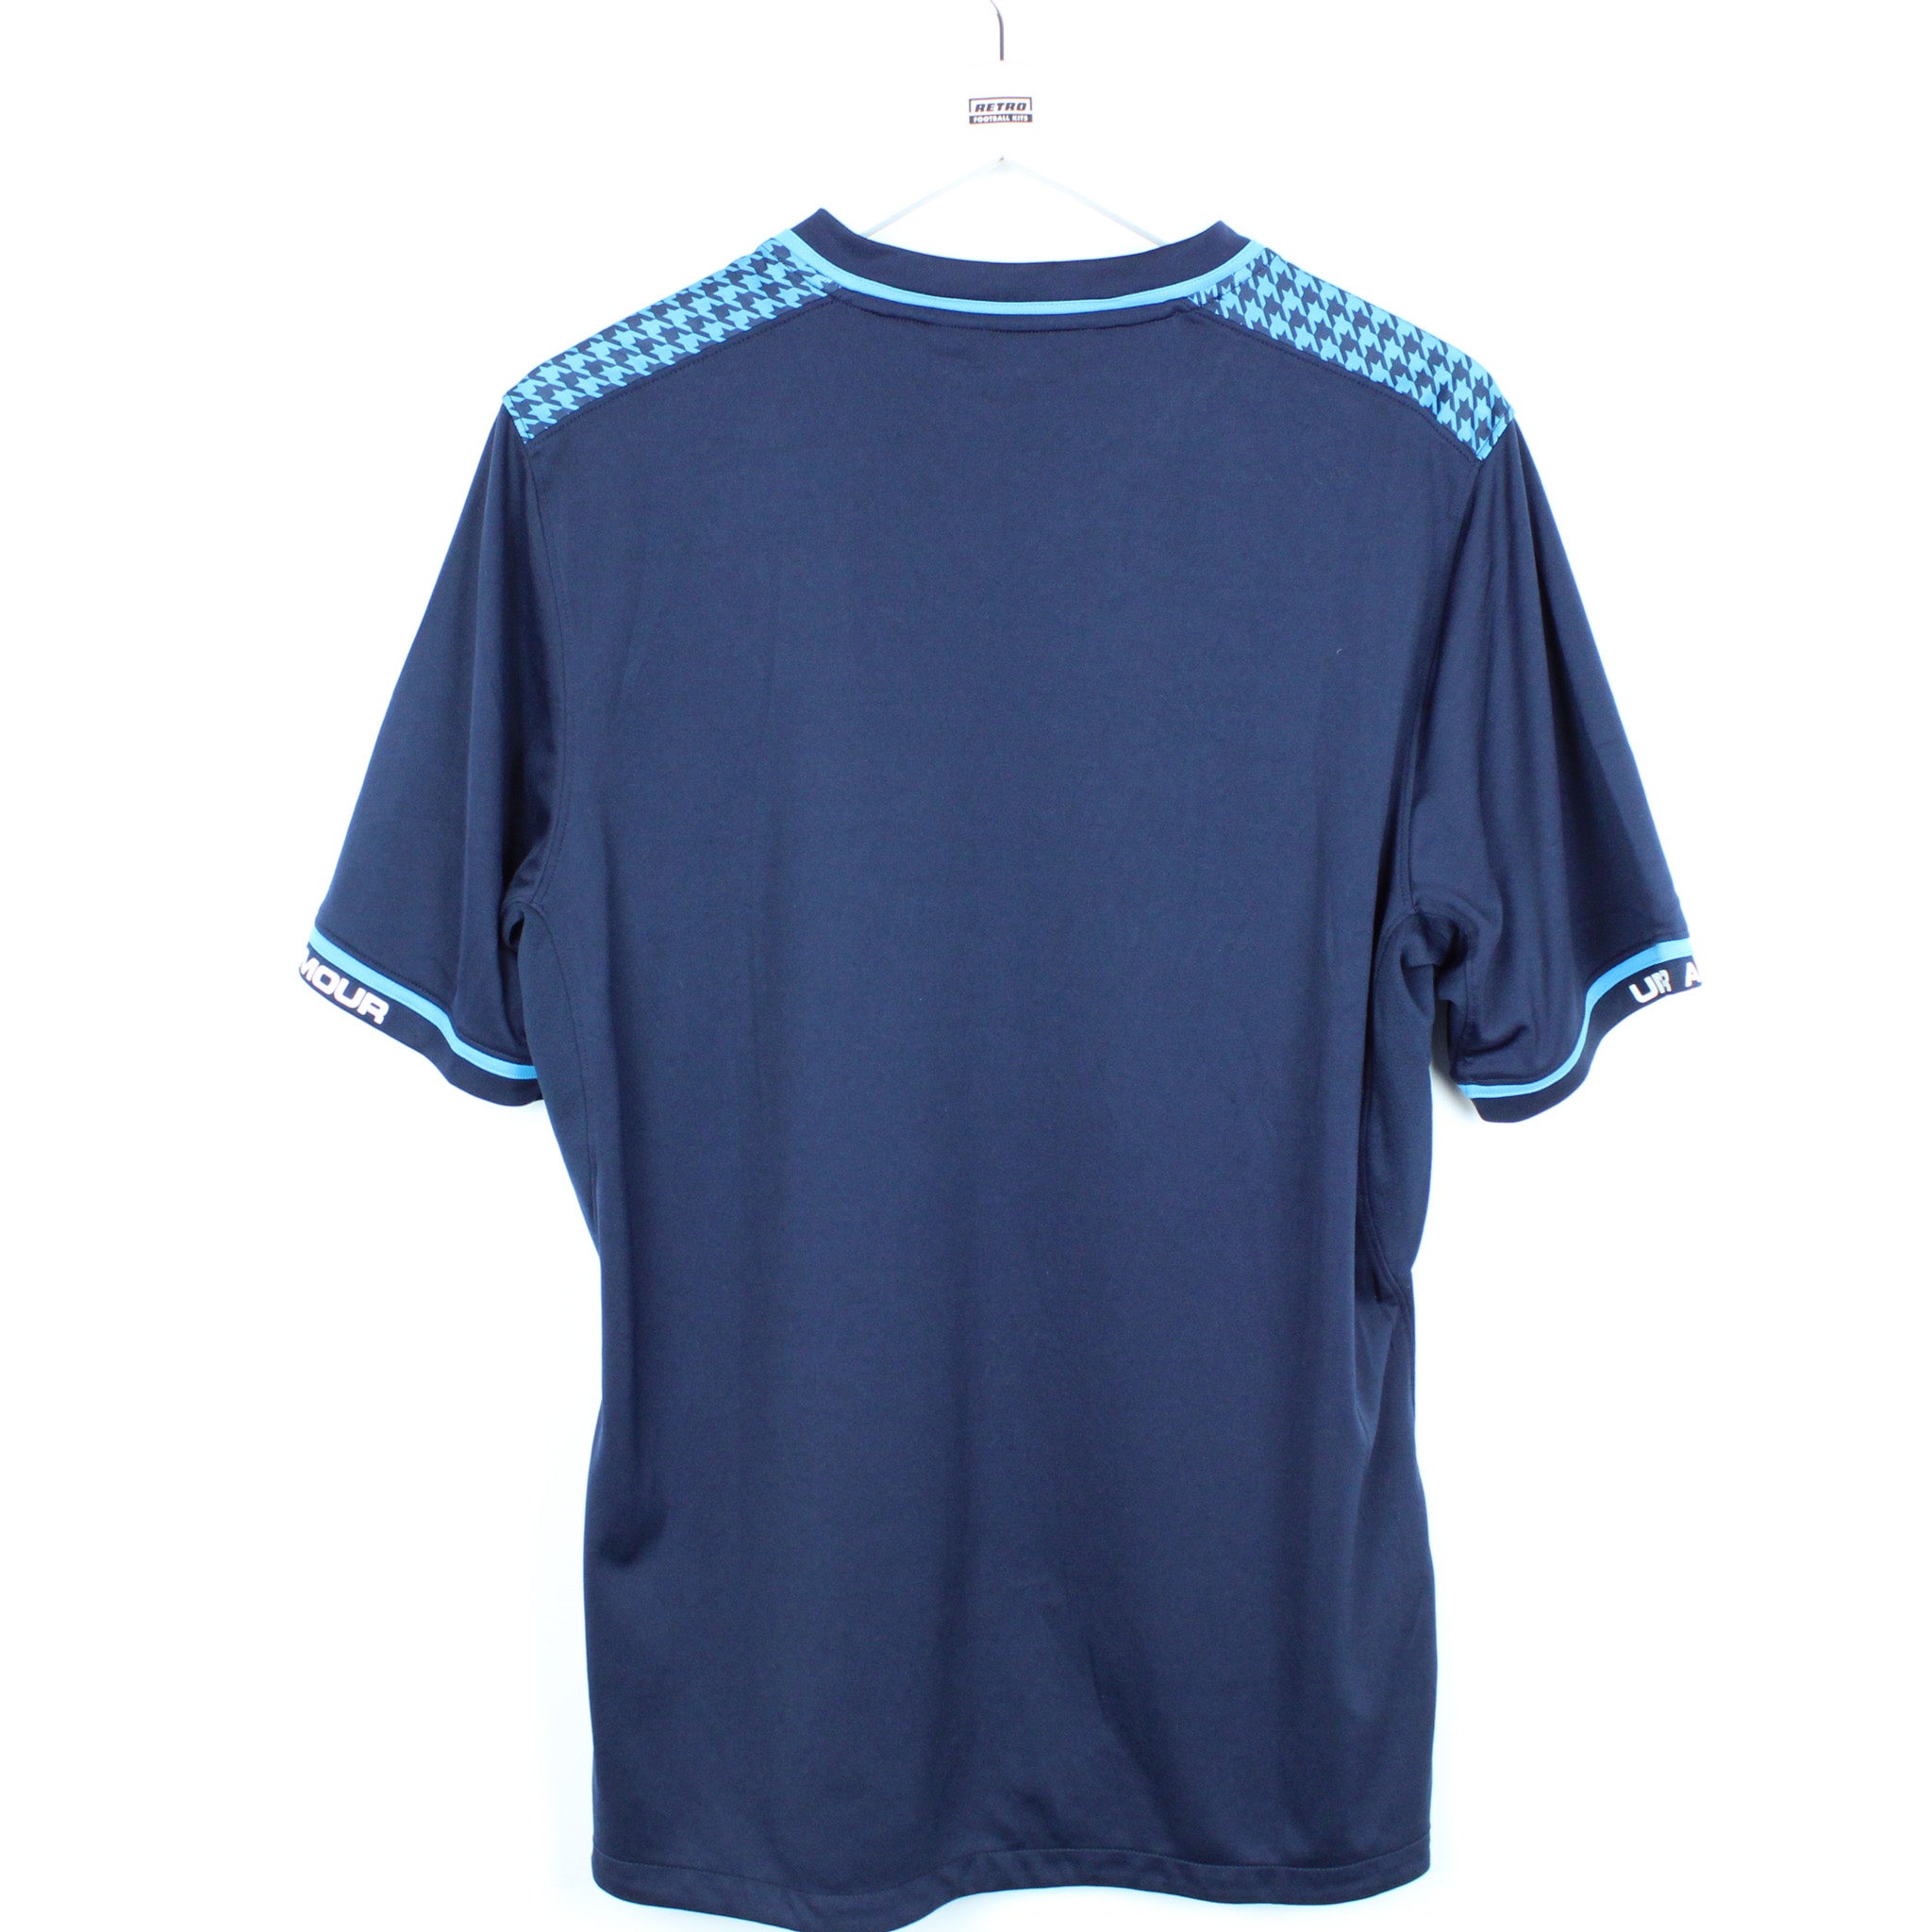 Tottenham Hotspur Third football shirt 2013 - 2014. Sponsored by Hewlett  Packard